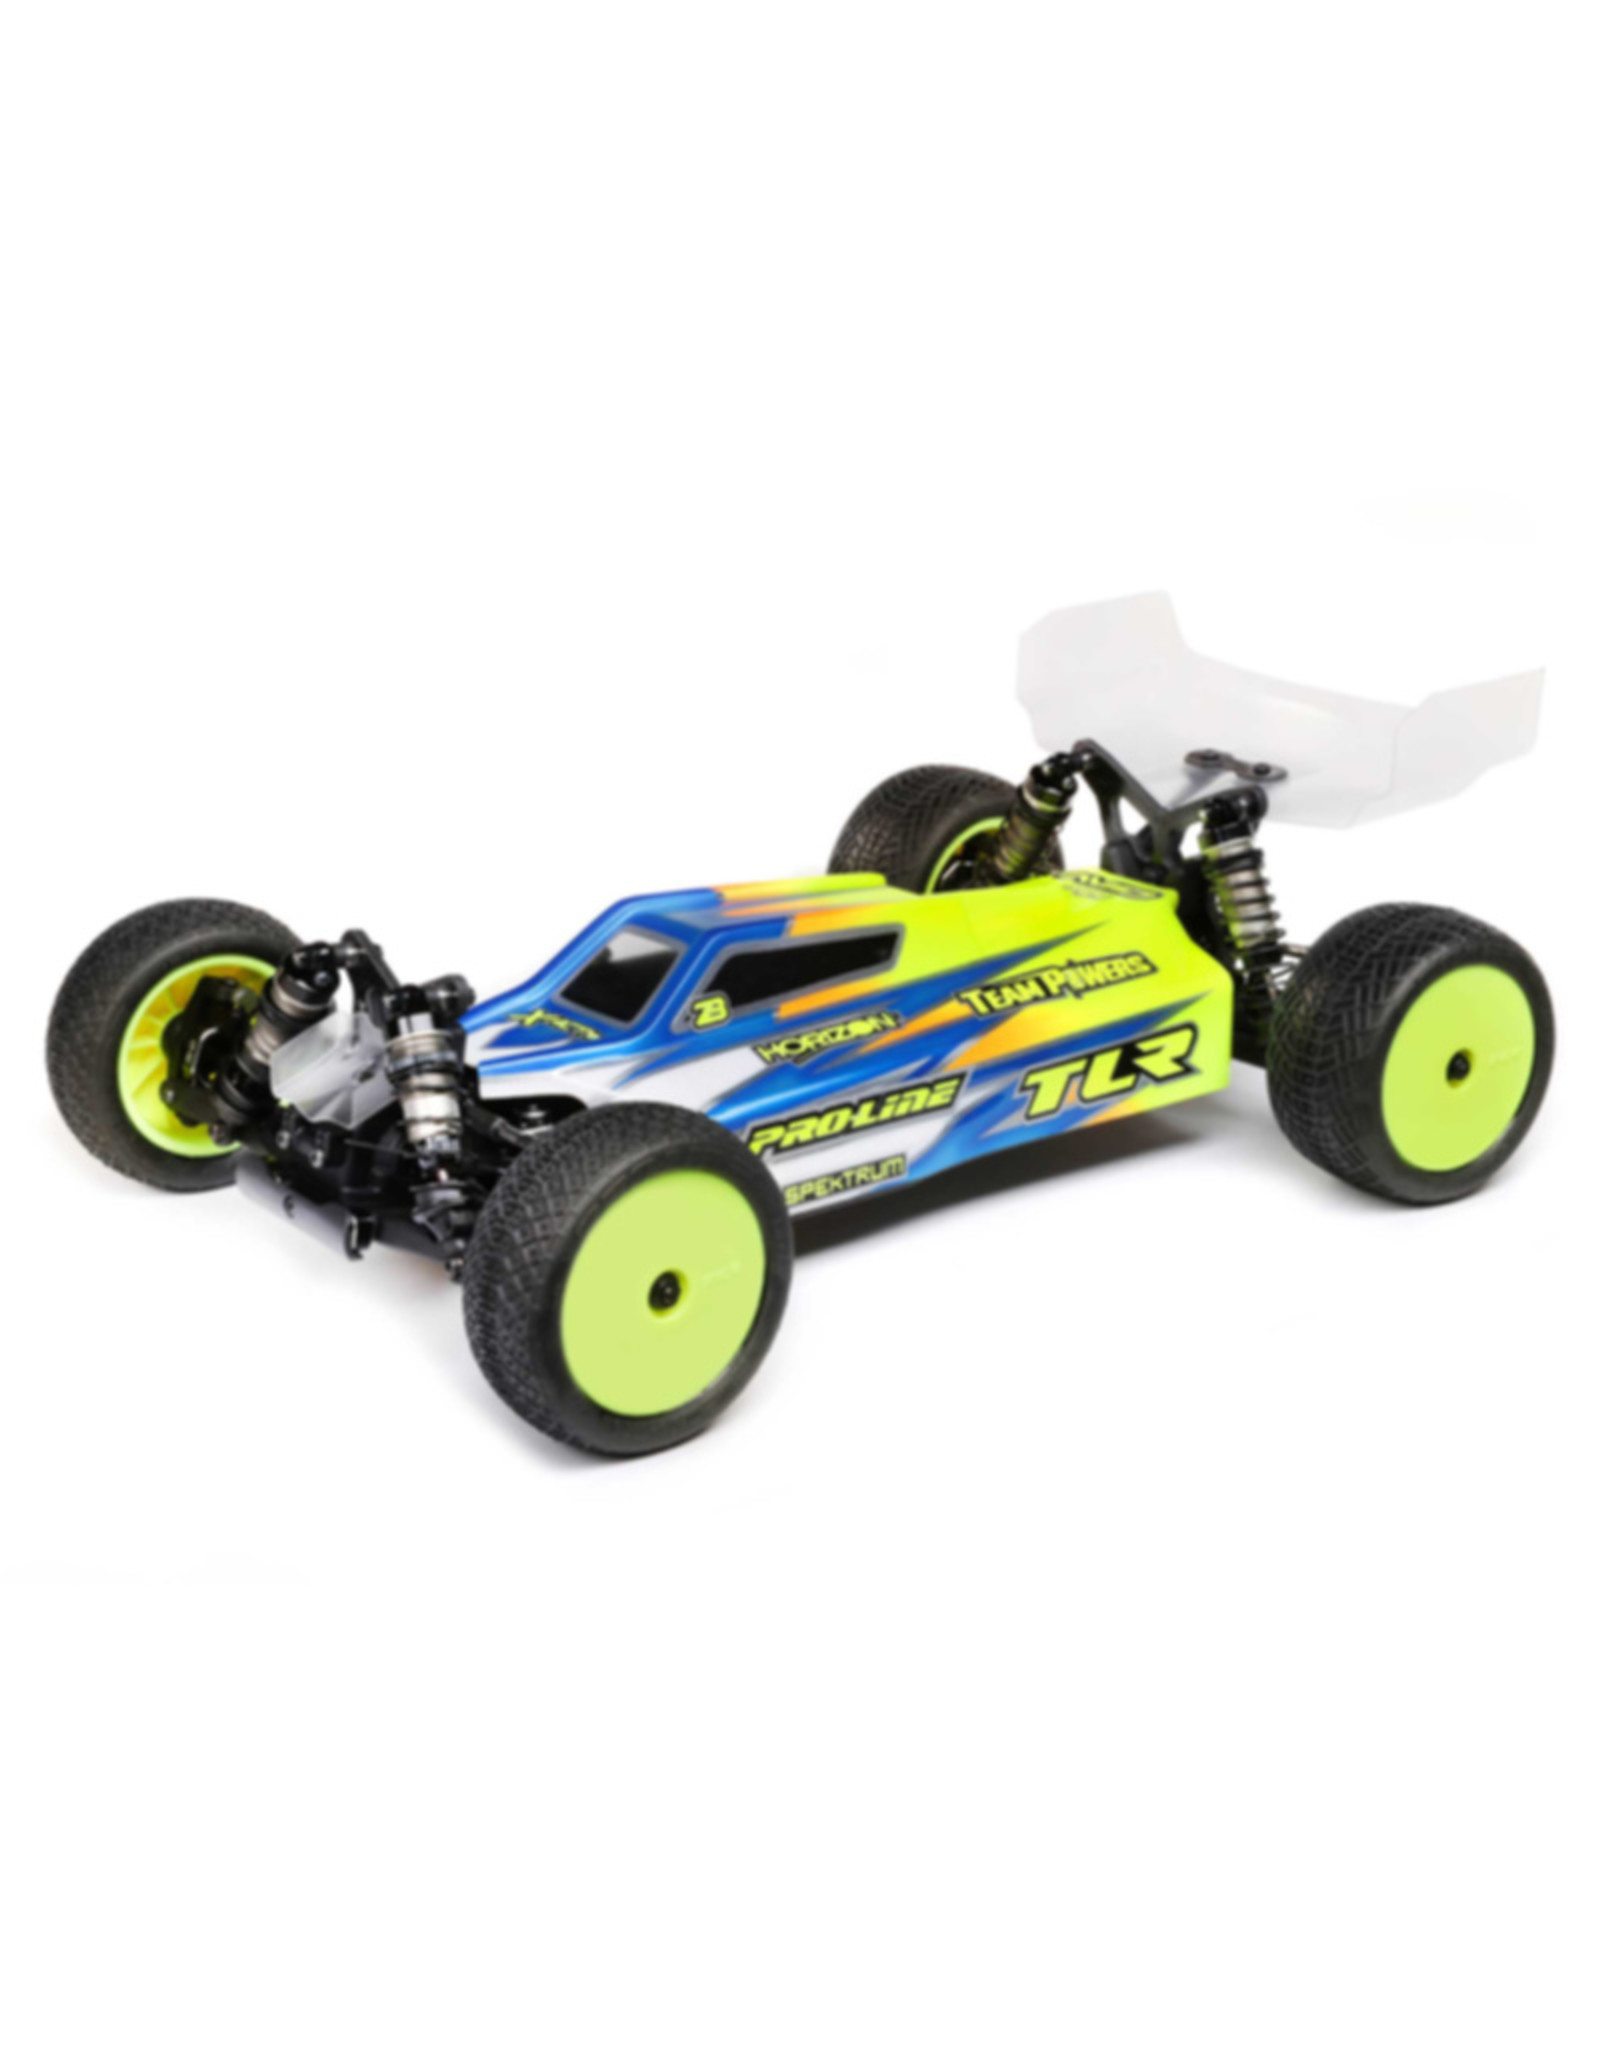 team losi racing TLR03026  1/10 22X-4 ELITE 4WD Buggy Race Kit